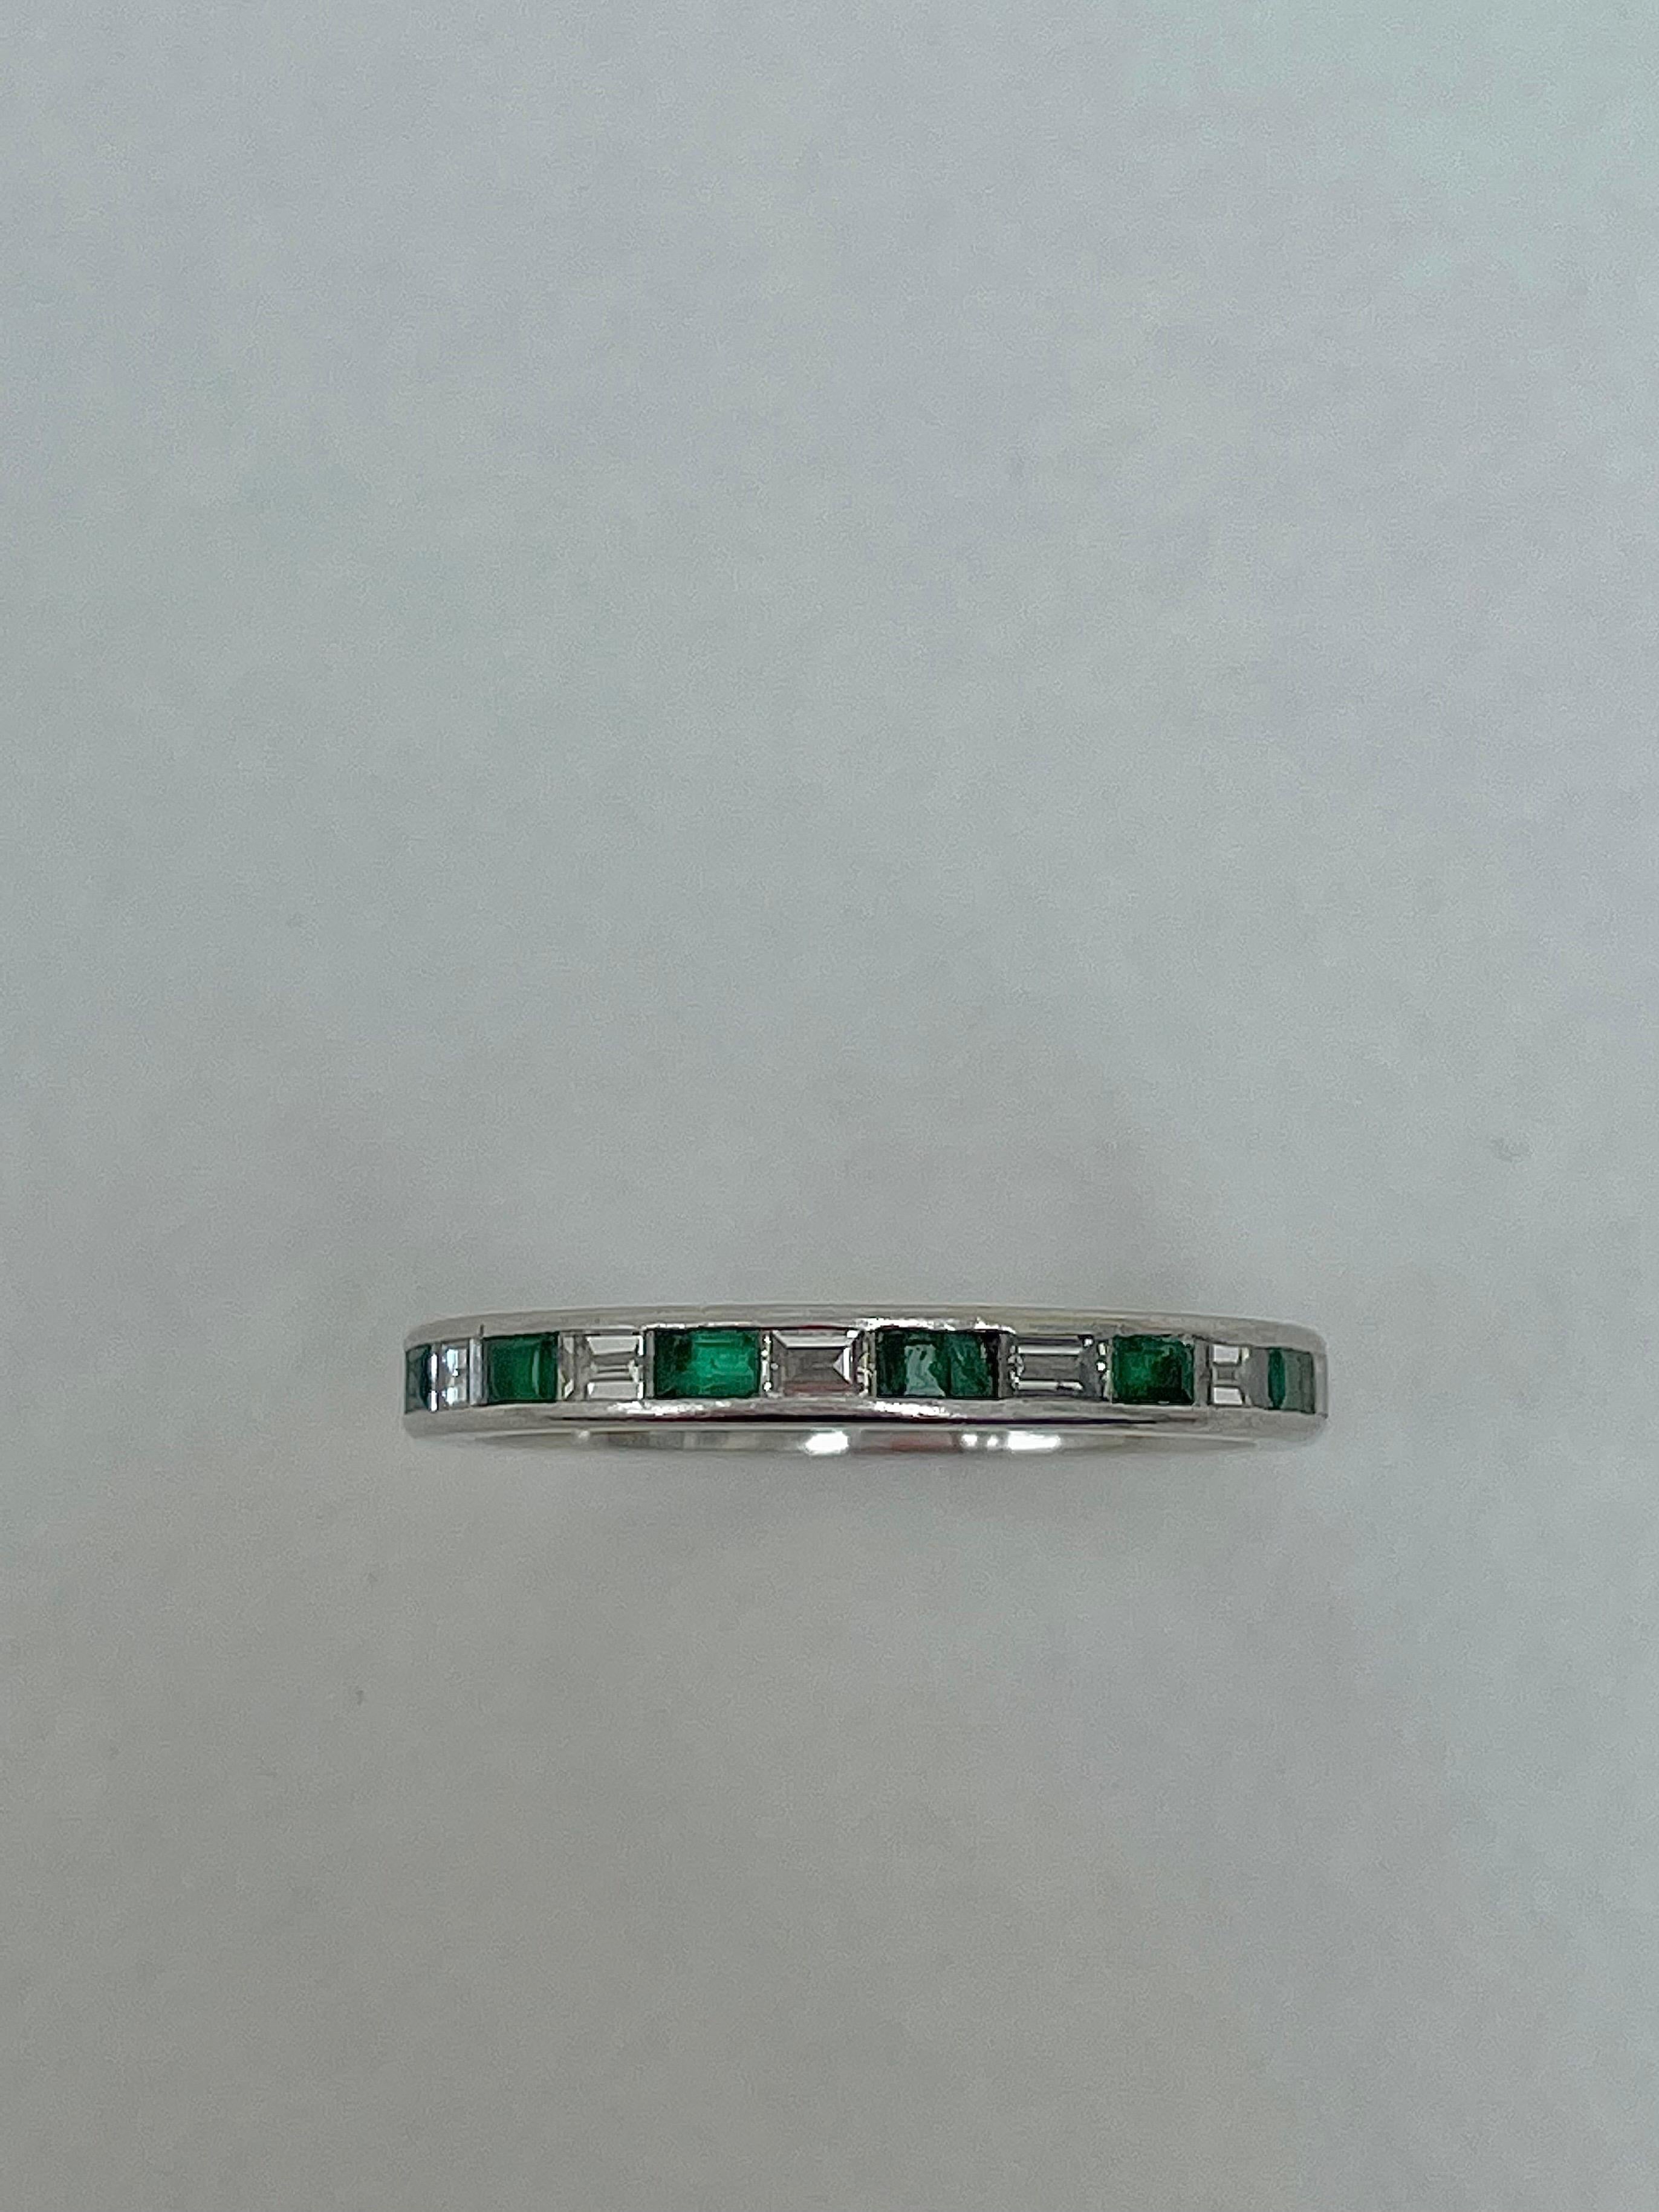 Antiker Platin-Eternity-Ring mit Smaragd und Diamant in voller Eternity

entzückender Ring für die Ewigkeit, einfach aber schön! 

Der Artikel kommt ohne die Box auf den Fotos, sondern wird in einem präsentiert werden  Geschenkbox

Maße: Gewicht